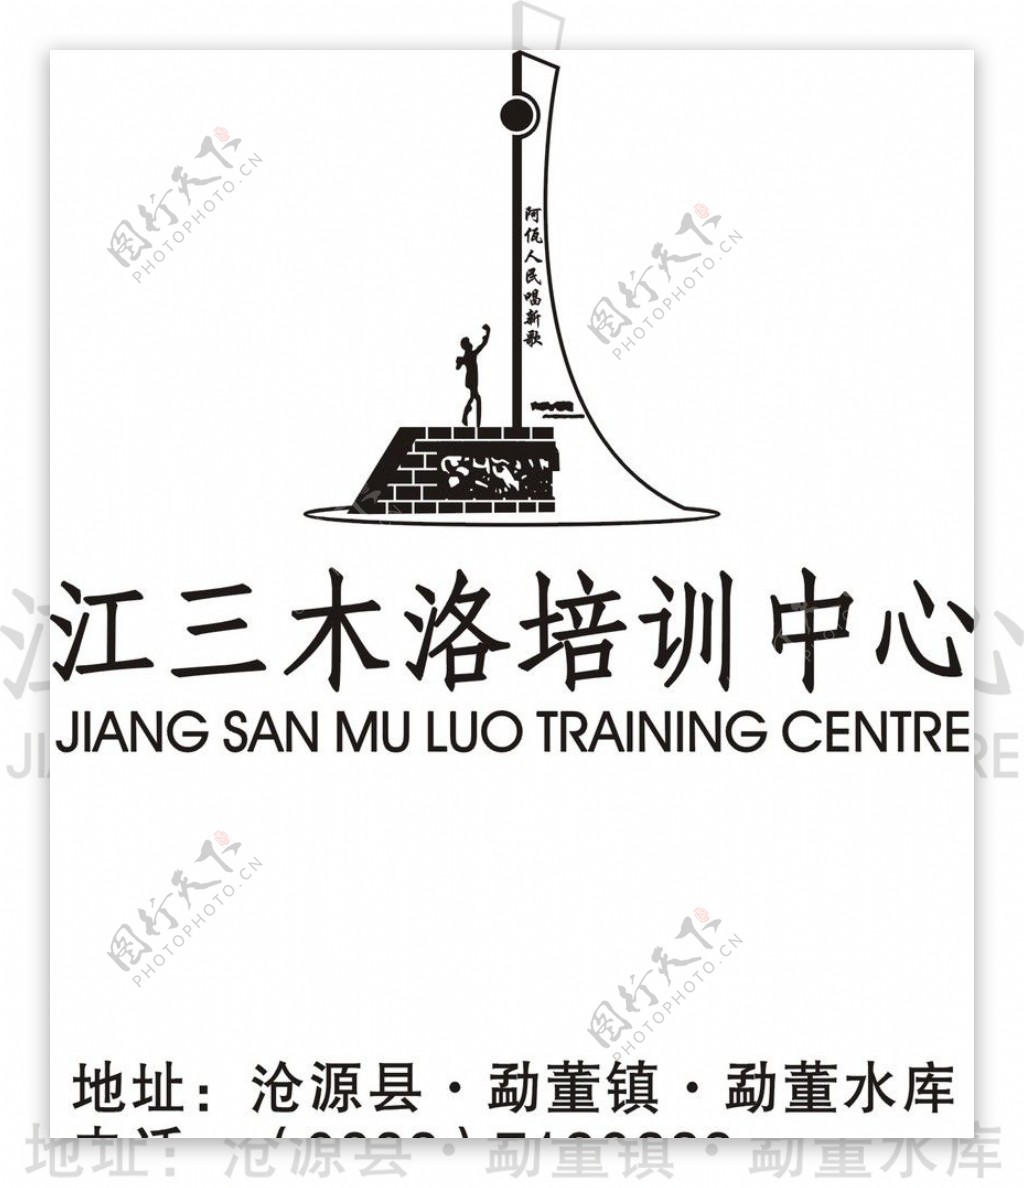 江三木洛培训中心图片